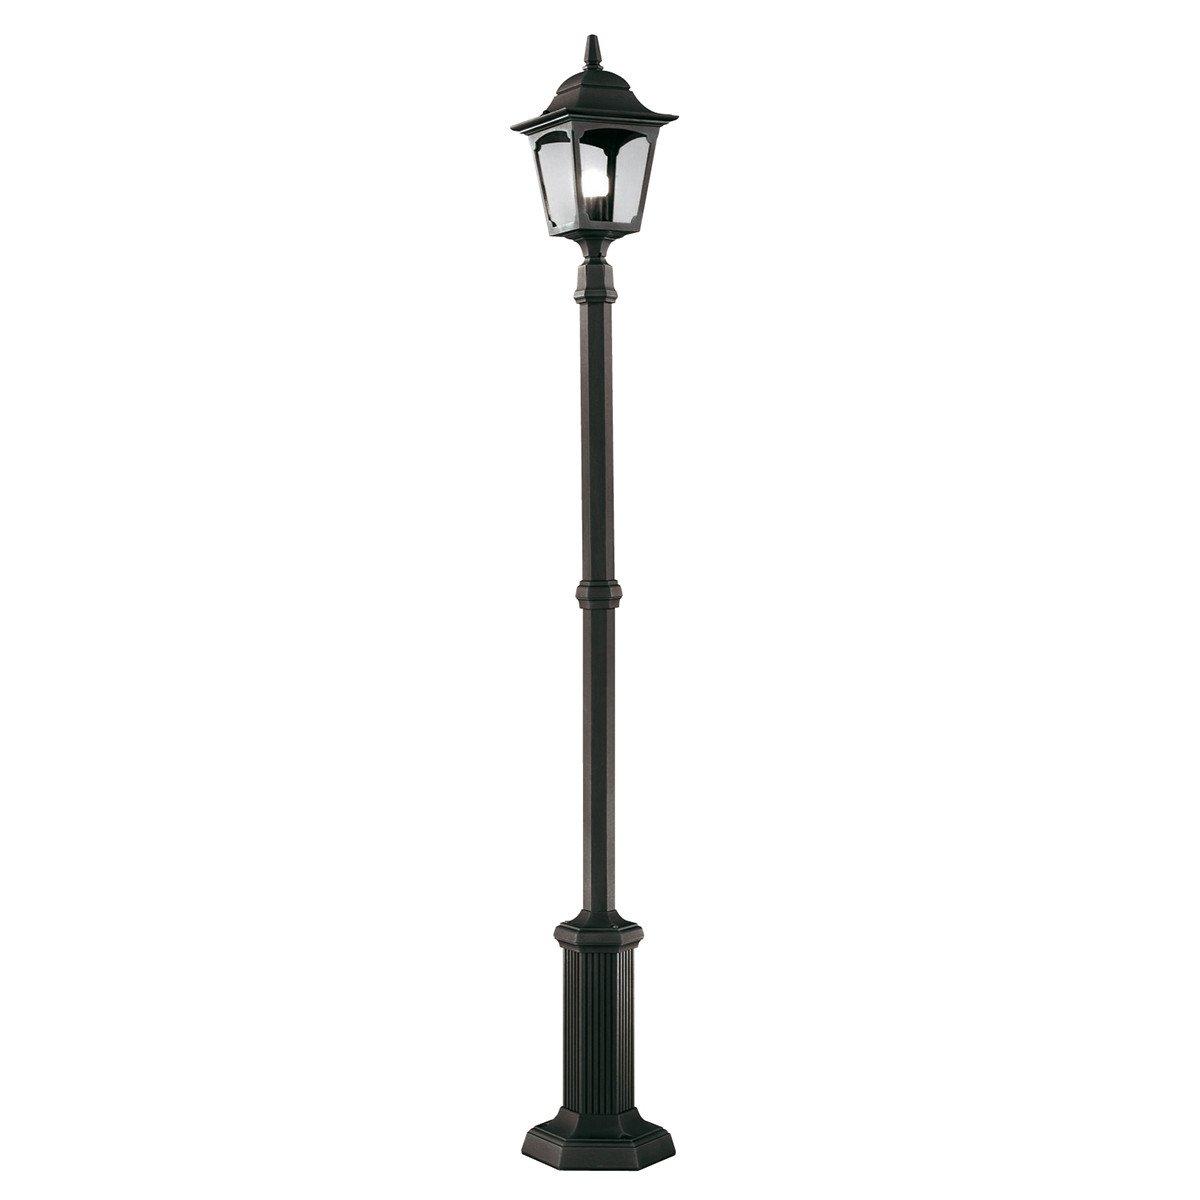 Chapel Outdoor Lamp Post in Black